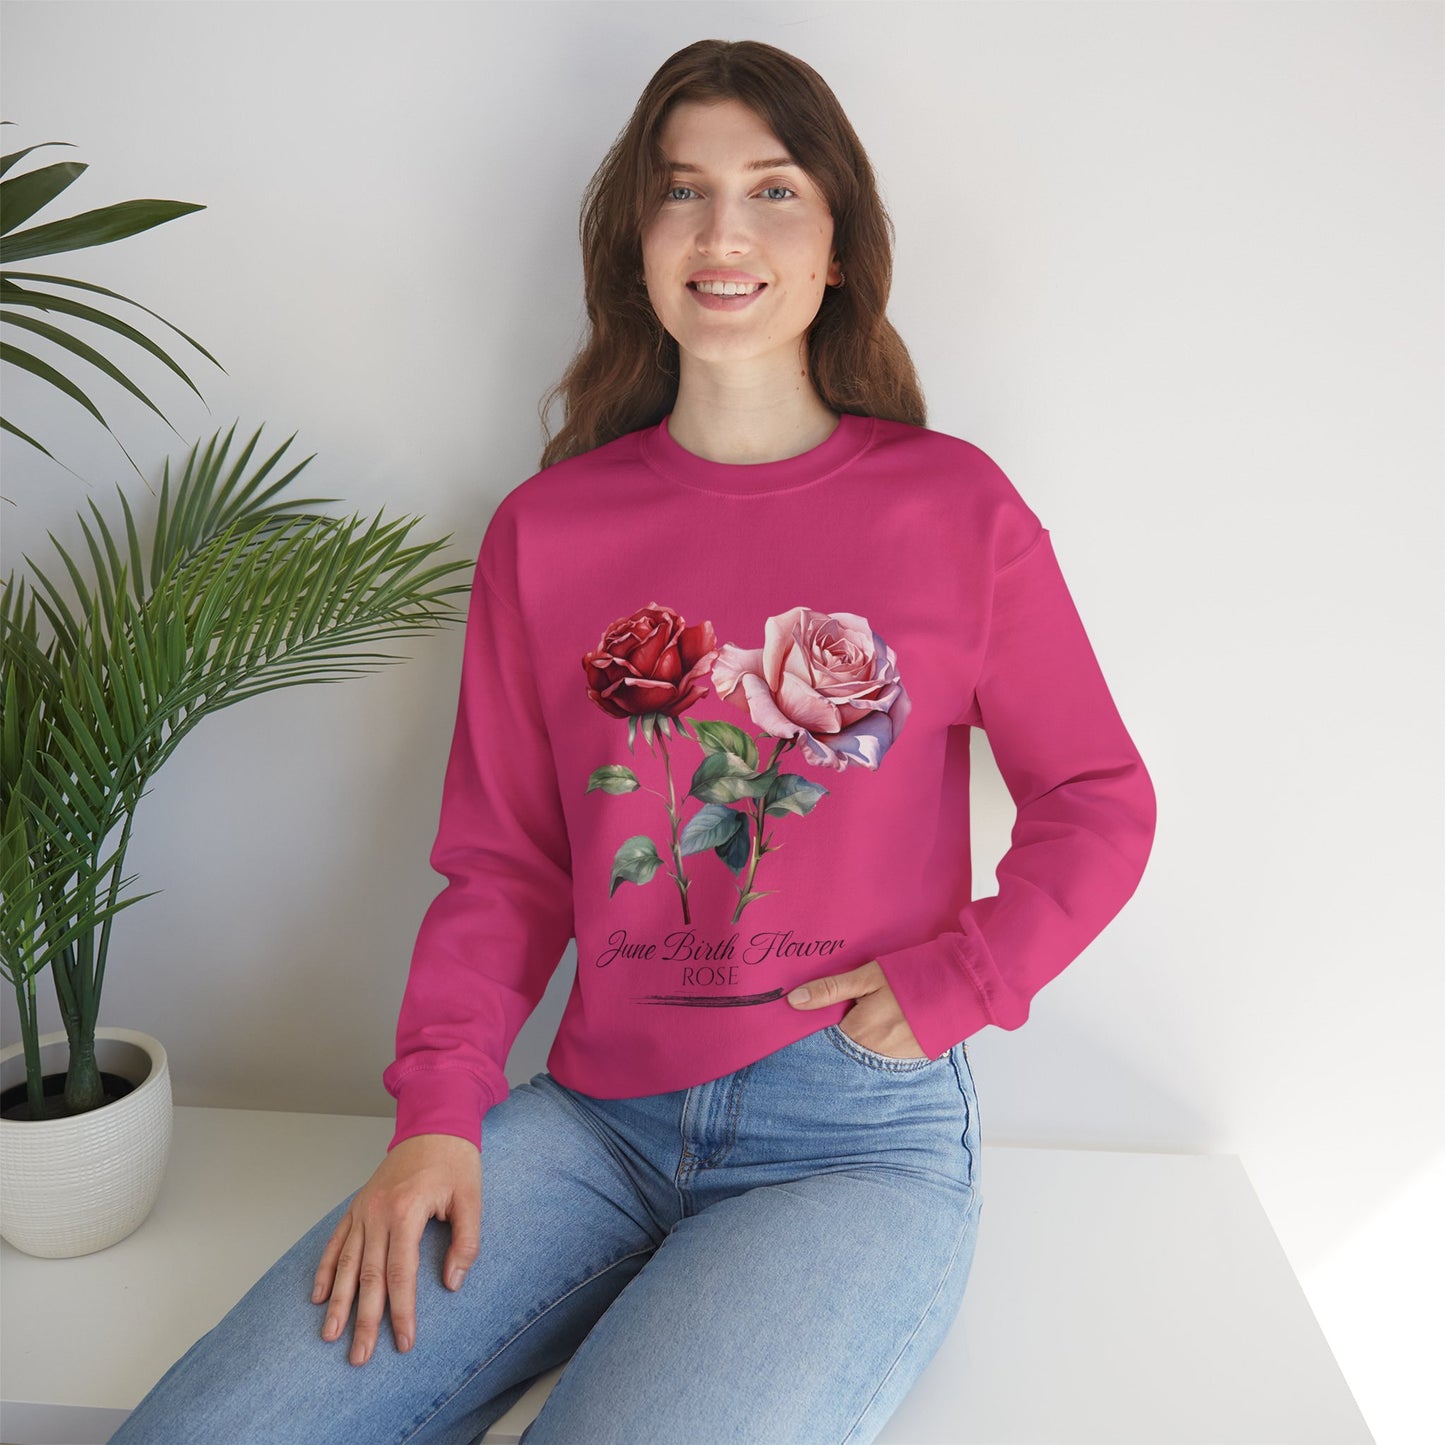 June Birth Flower (Rose) - Unisex Heavy Blend™ Crewneck Sweatshirt